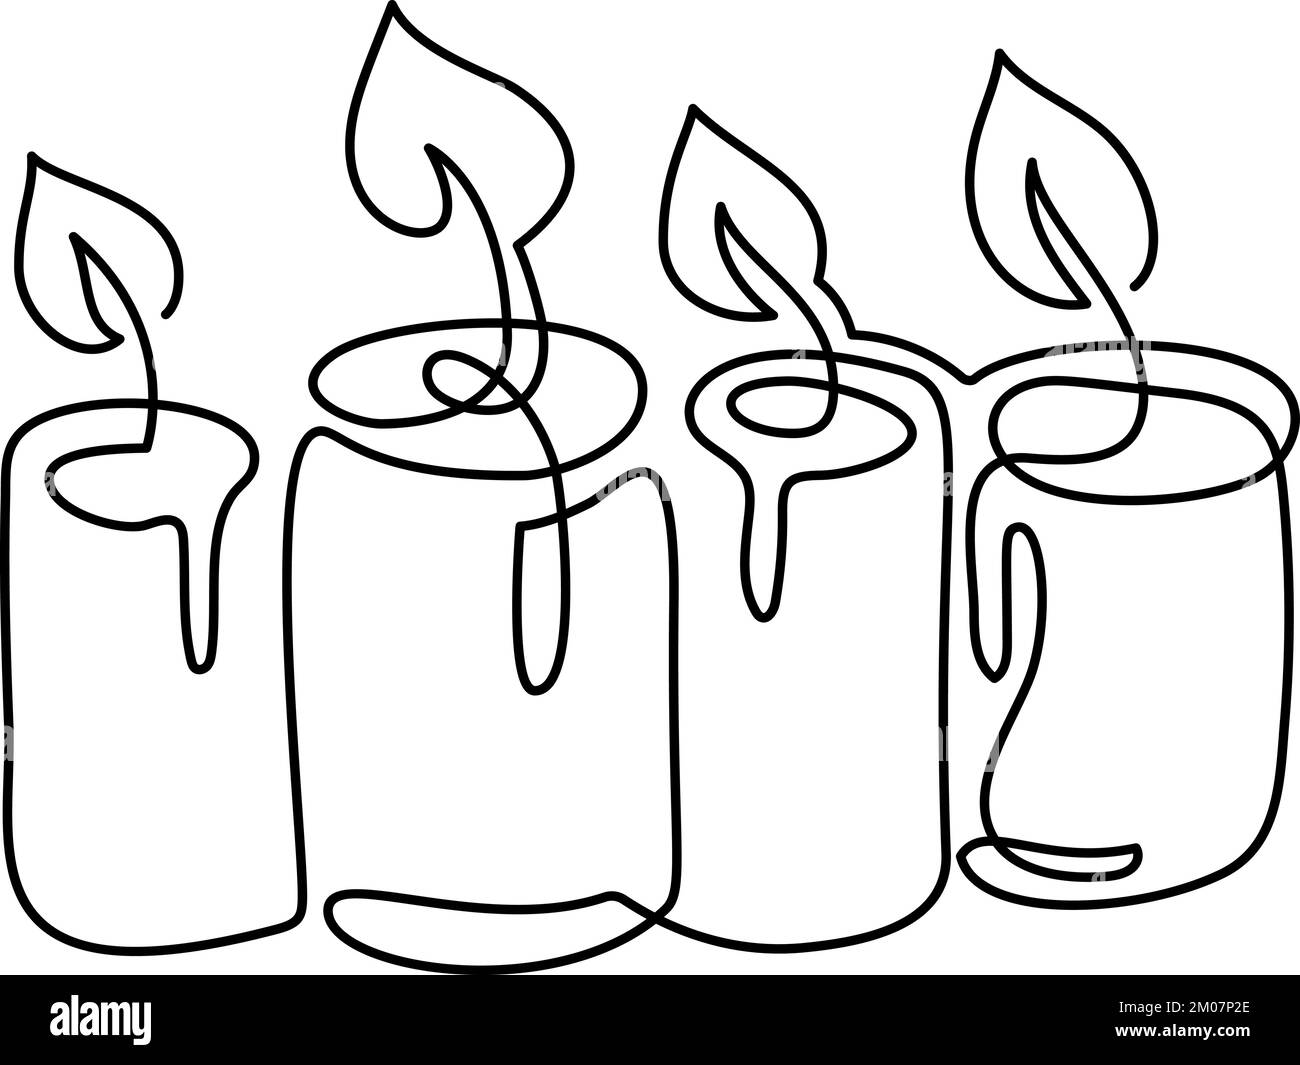 Handgezeichneter Vektor mit einer Linie, der vier 4 Kerzen verbrennt Logo-Symbol. Grußkarte mit Grußkarte, isoliertes Webdesign Stock Vektor